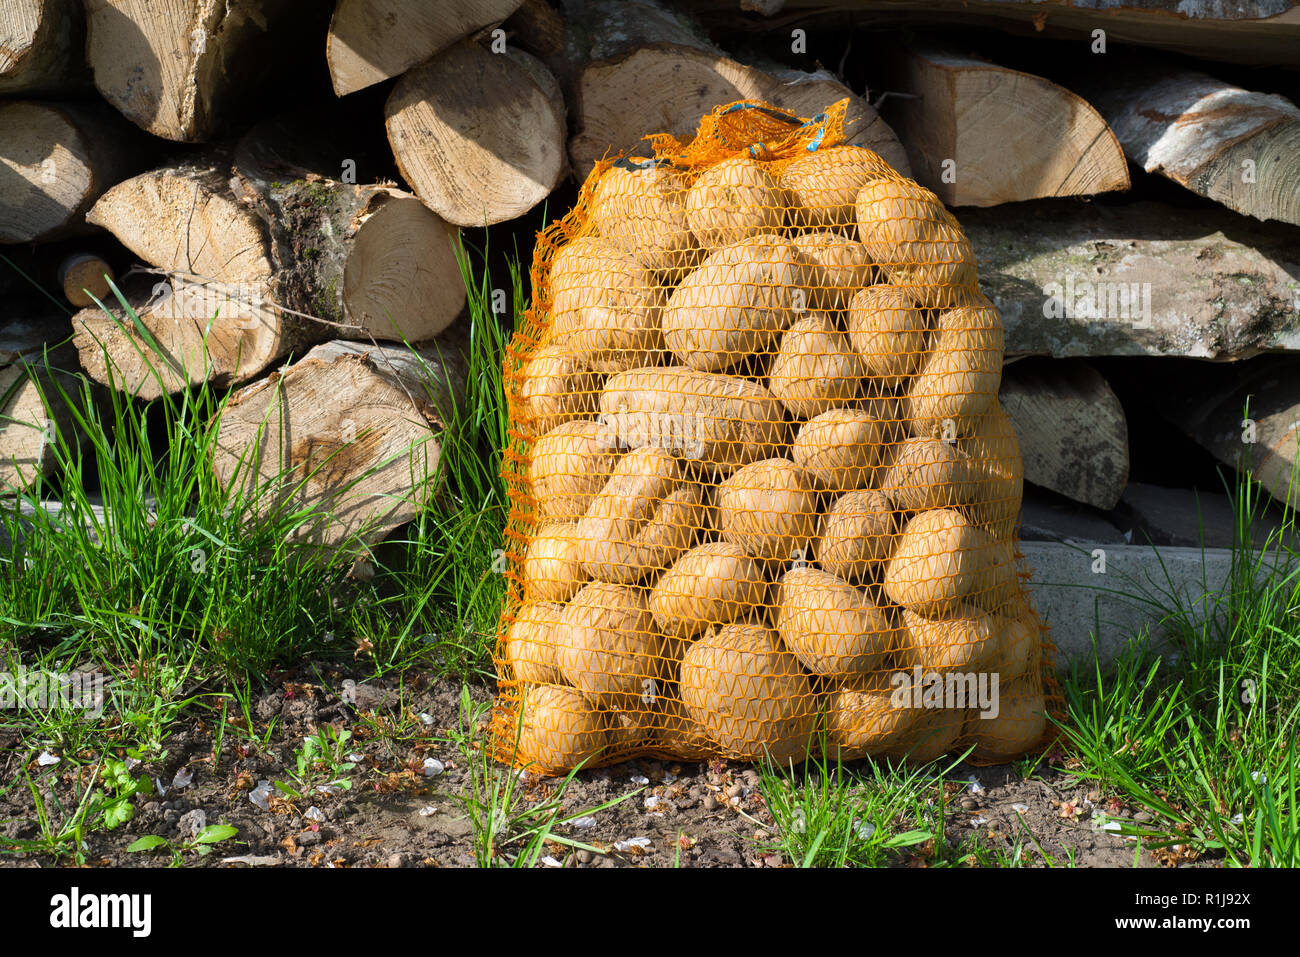 Patate in sacco nei pressi di tronchi di legno in erba Foto Stock